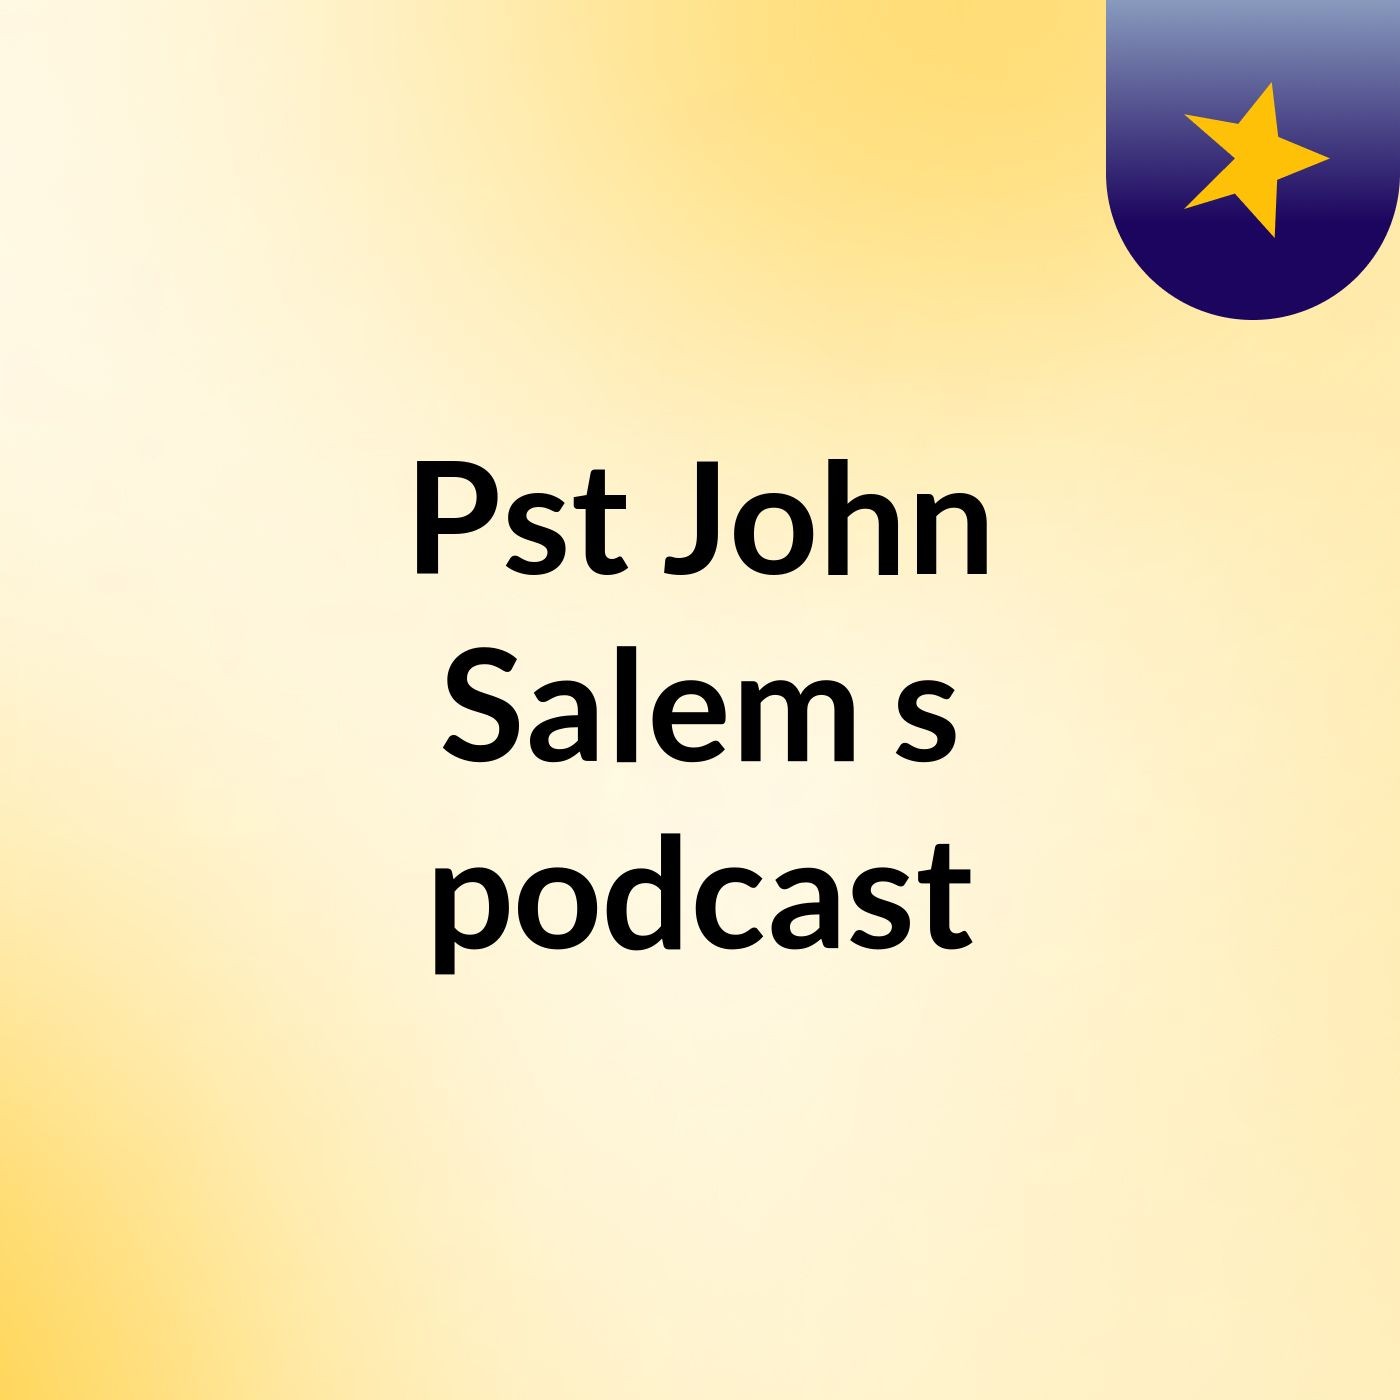 Pst John Salem's podcast